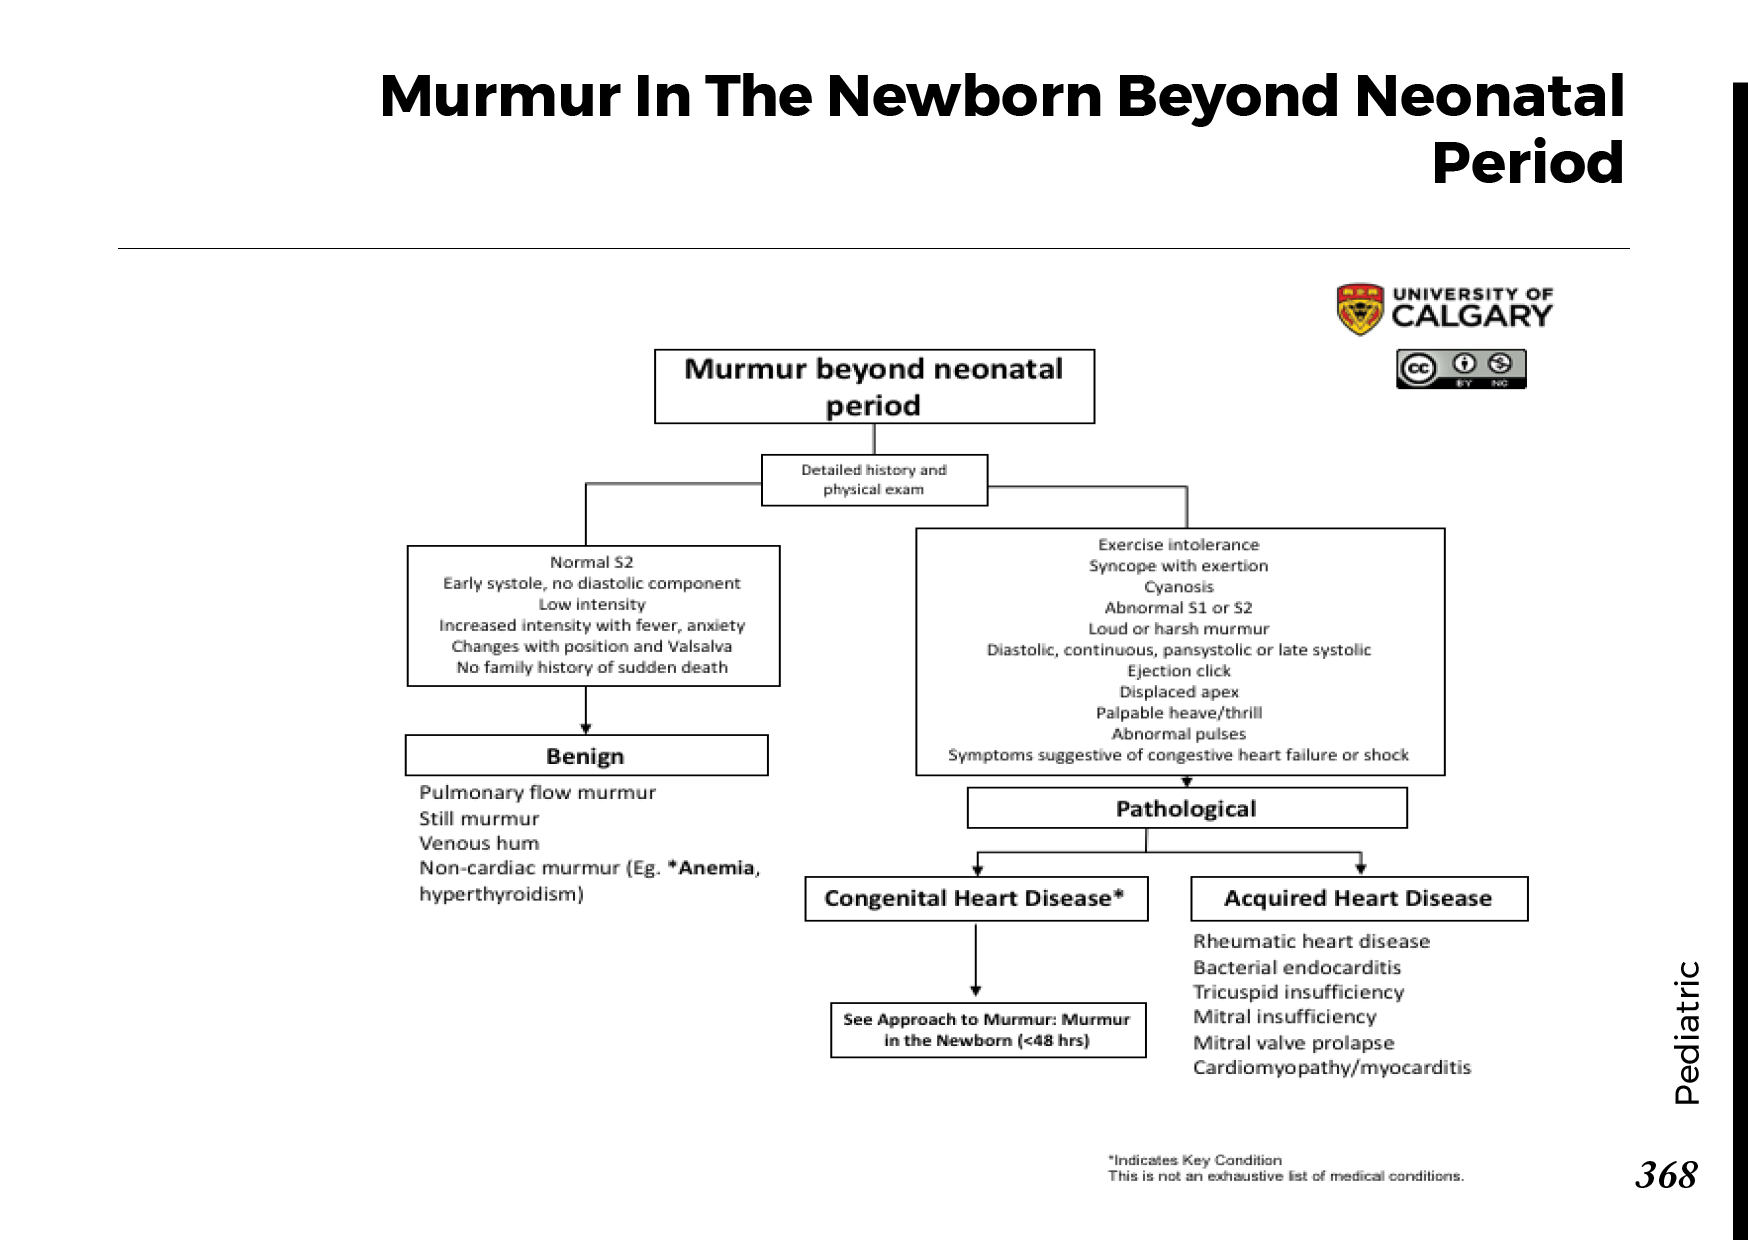 MURMUR IN THE NEWBORN BEYOND NEONATAL PERIOD Scheme